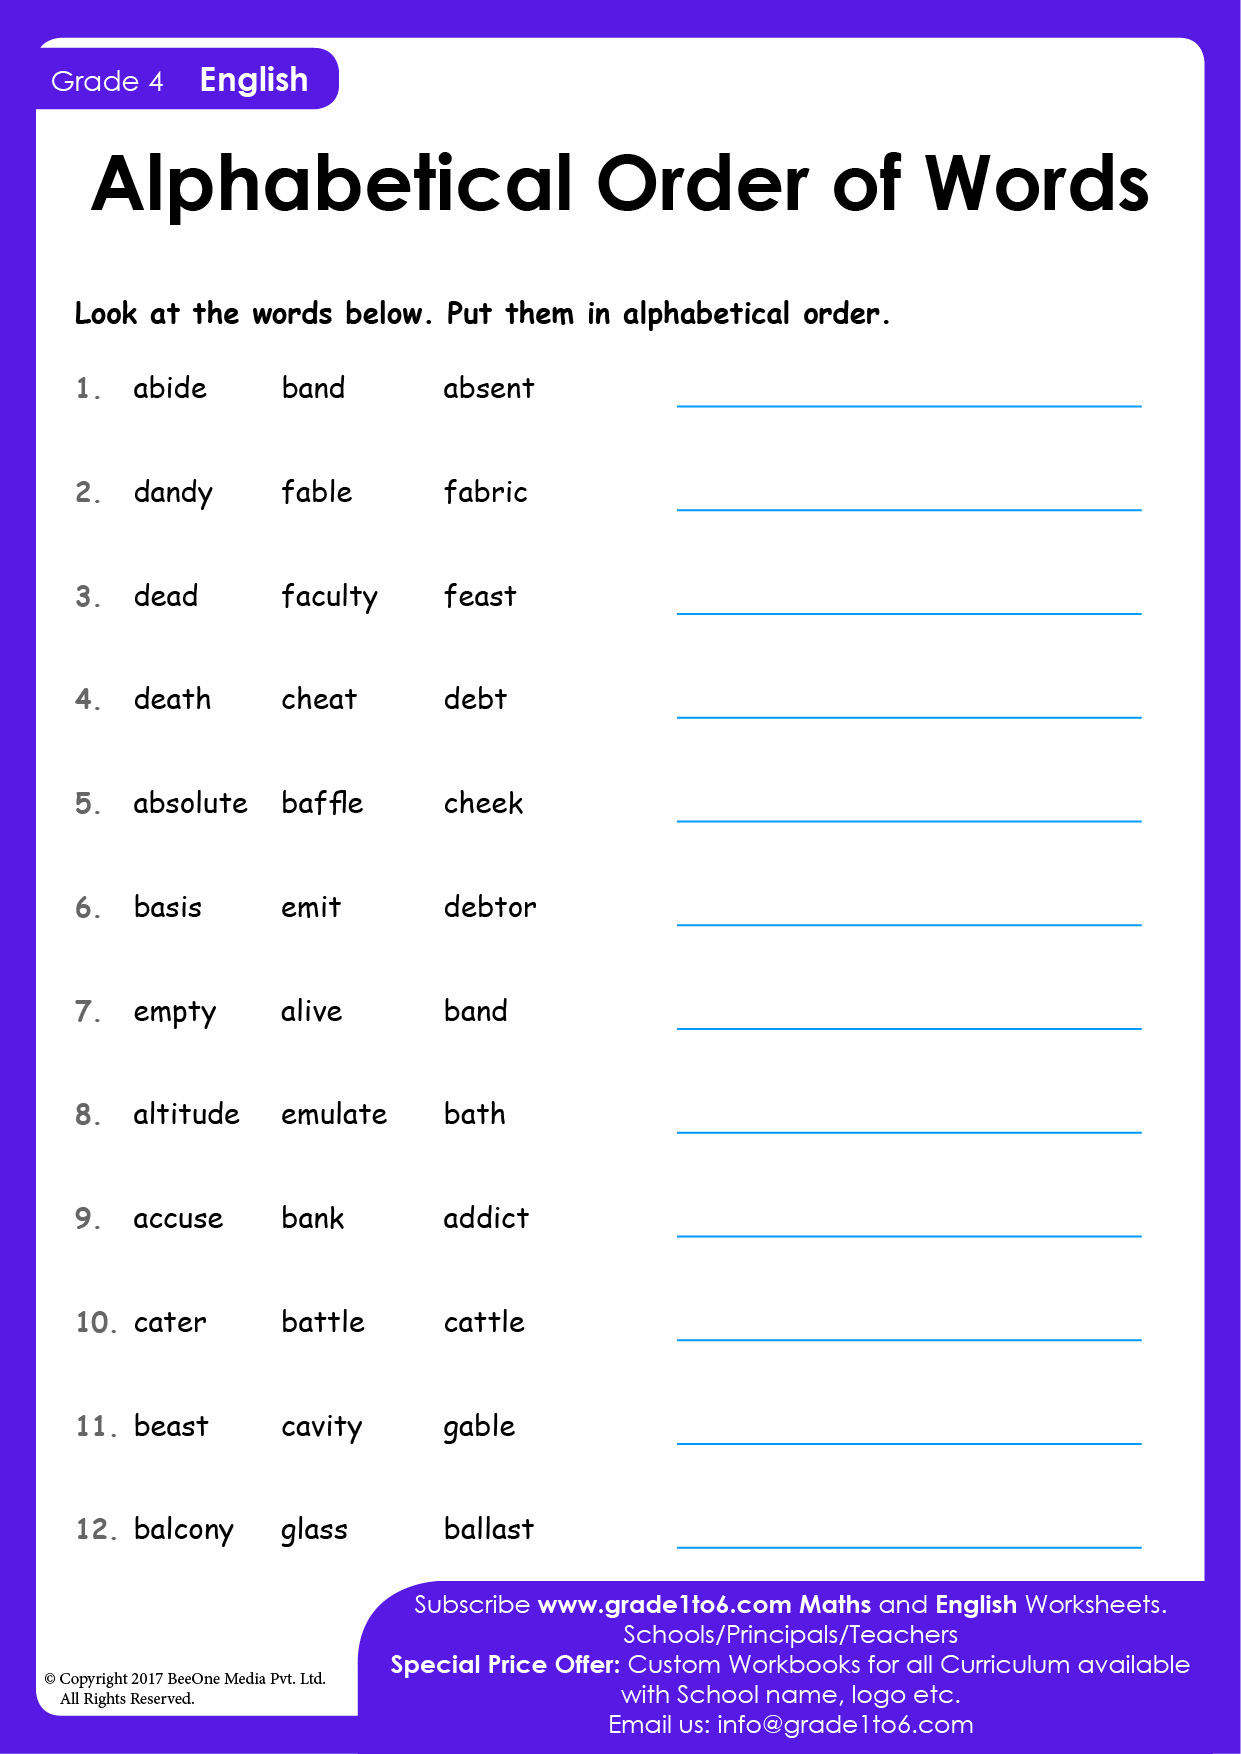 alphabetical-order-worksheets-grade-4